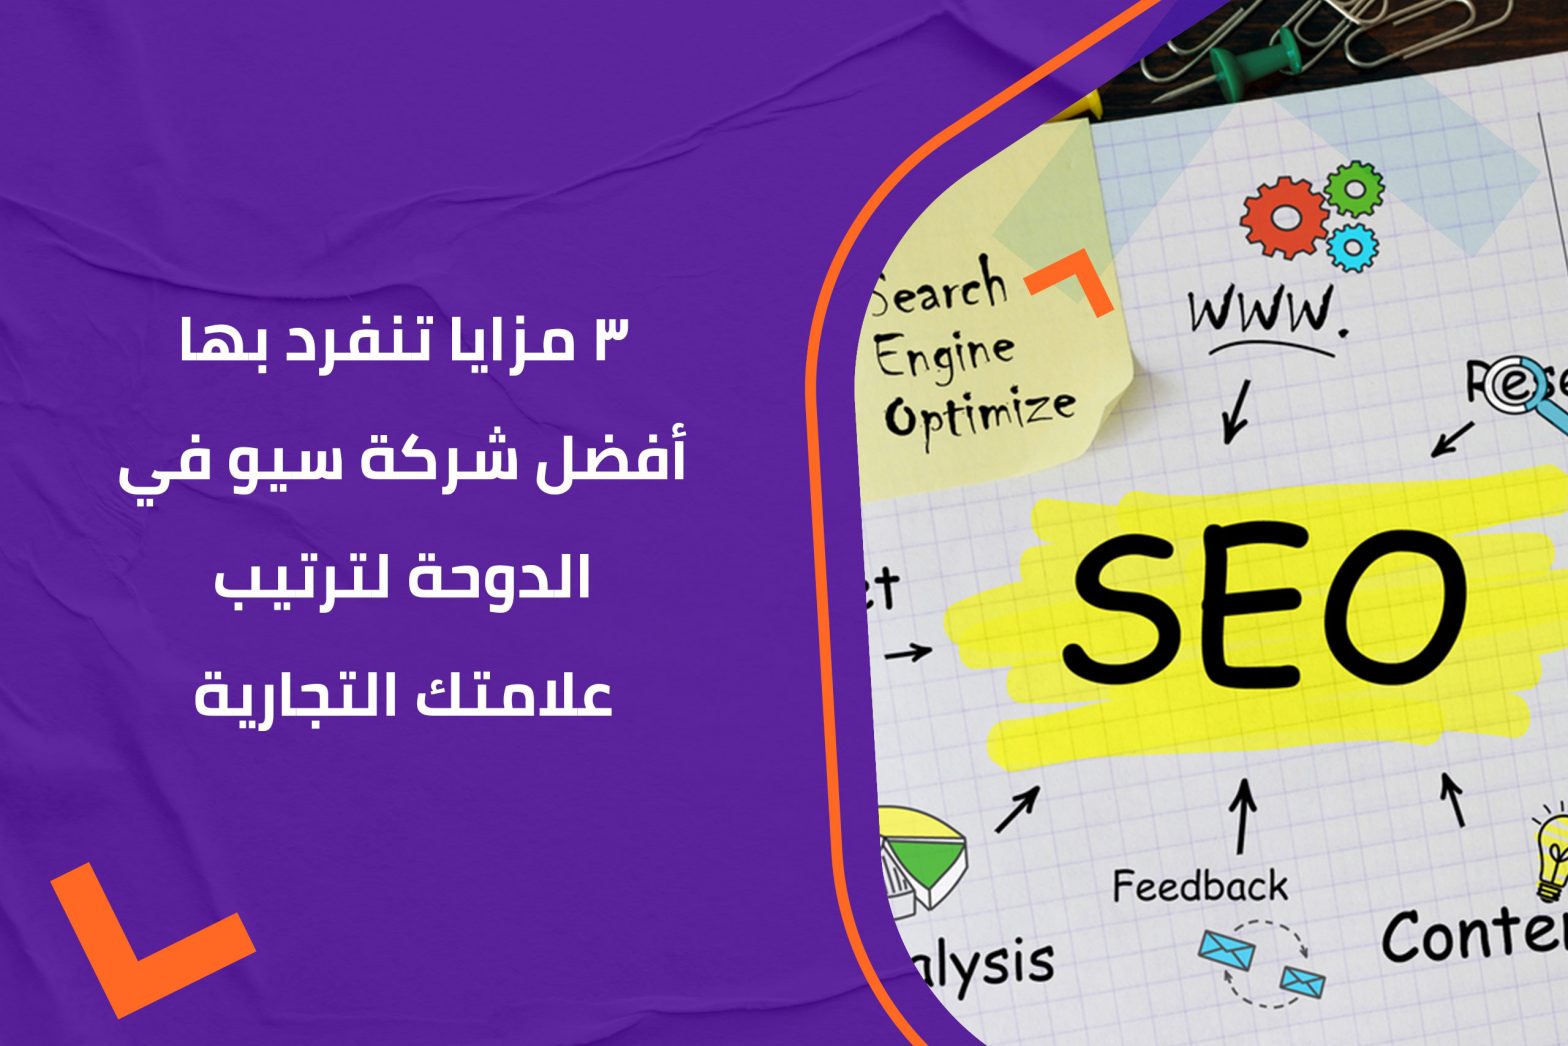 3 مزايا تنفرد بها أفضل شركة سيو في الدوحة لترتيب علامتك التجارية